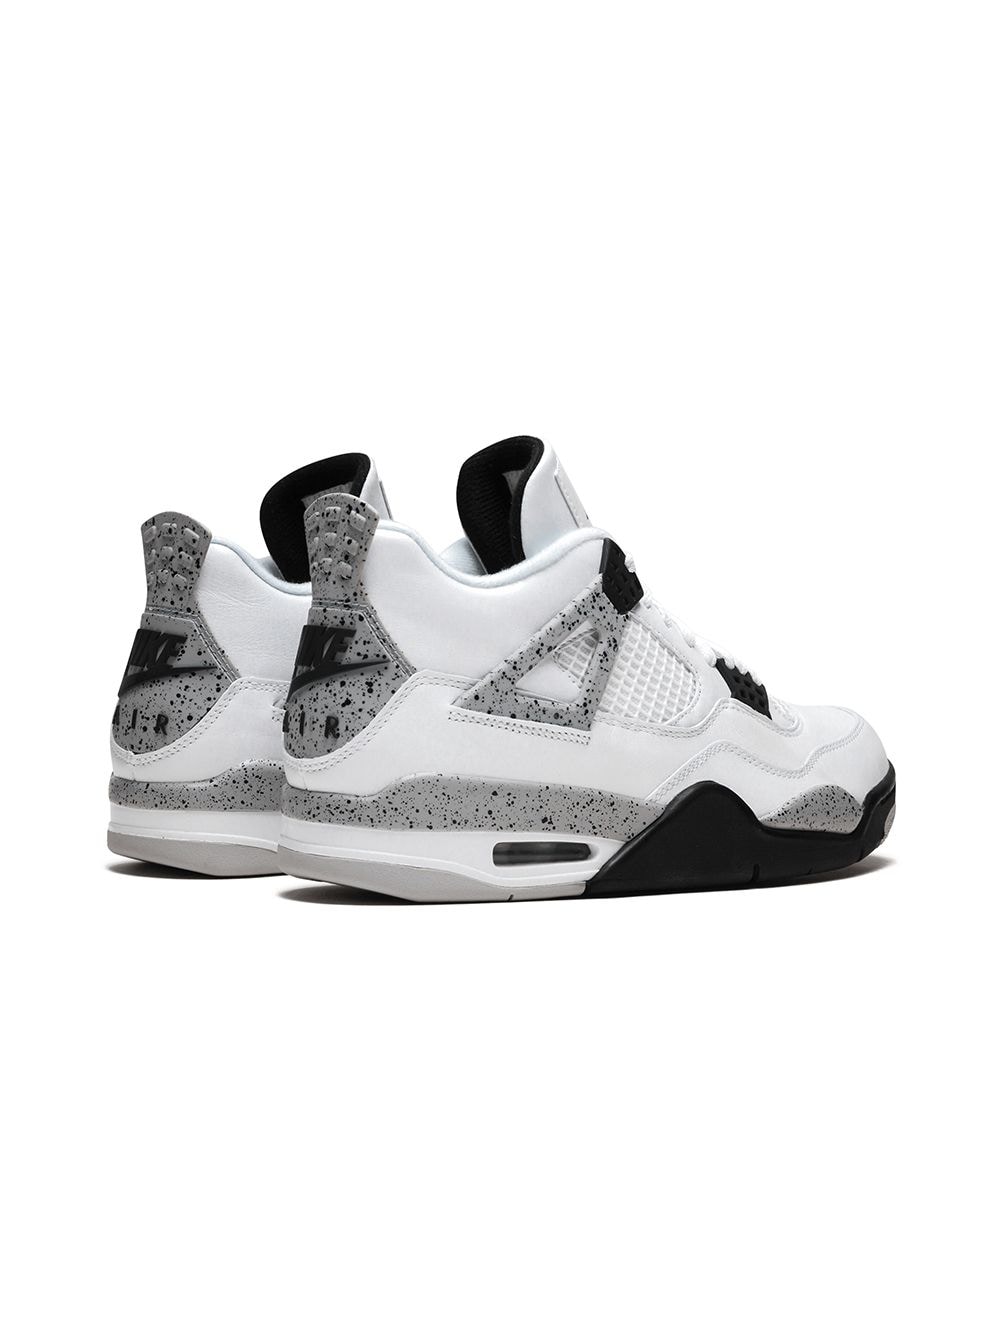 Giày Nike Air Jordan 4 Retro White Cement Rep 1:1